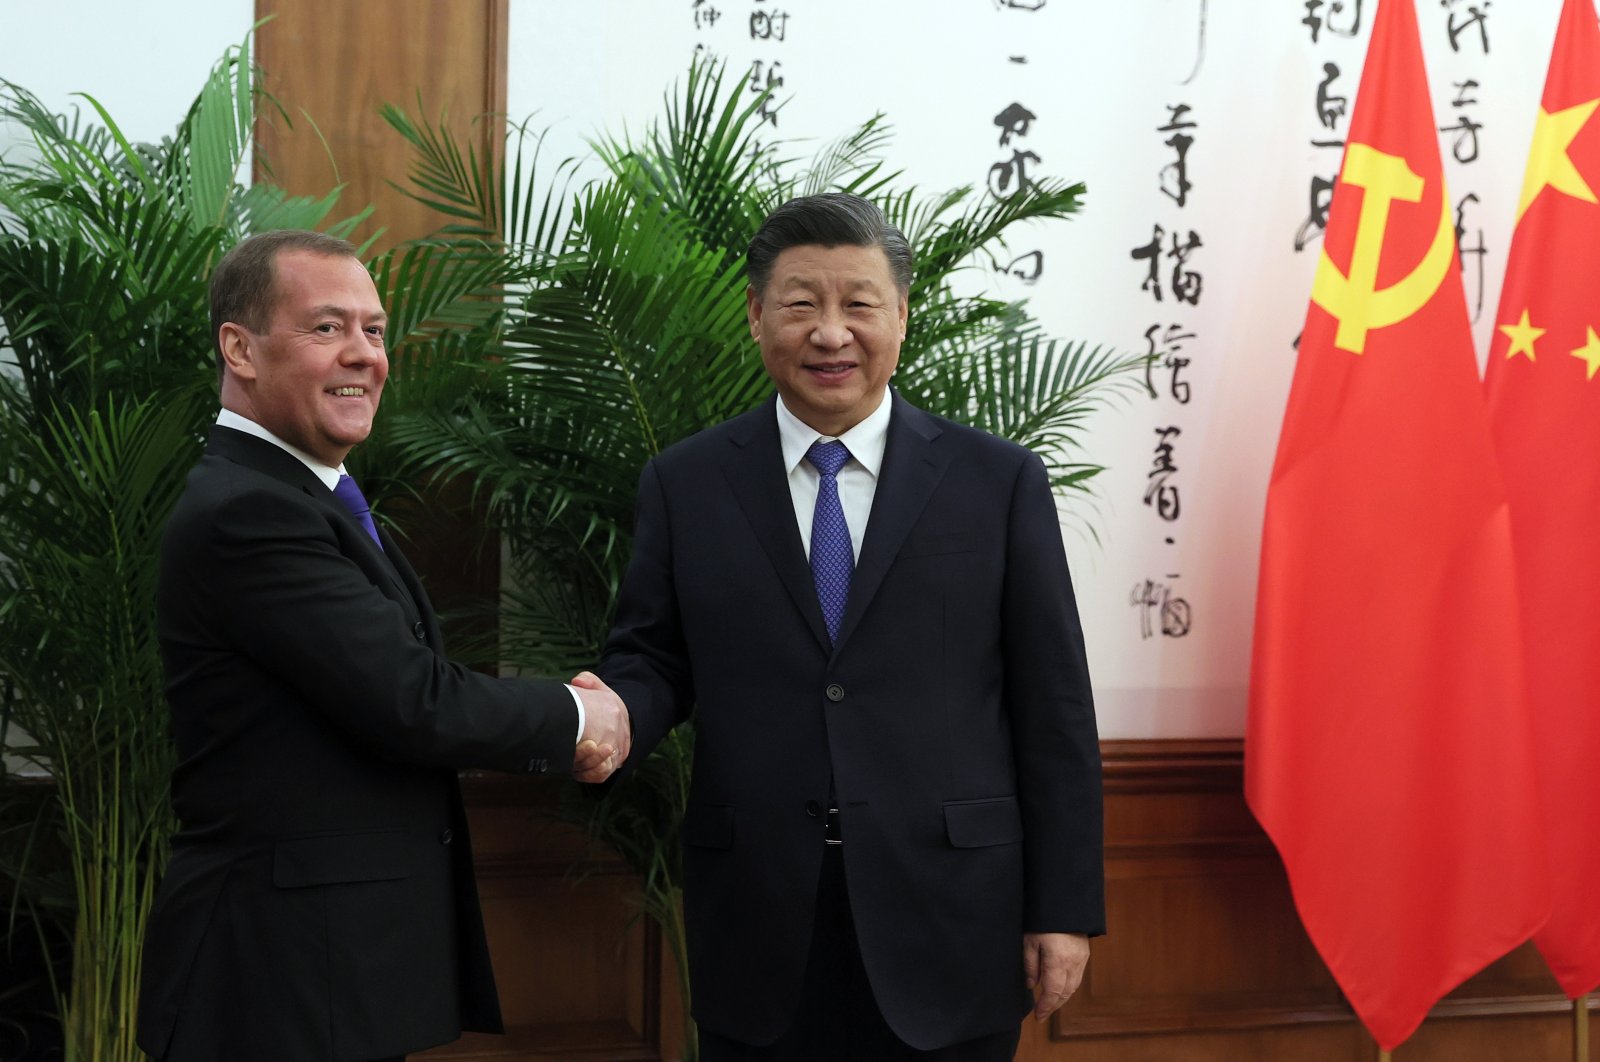 Medvedev dari Rusia bertemu dengan Xi dari China selama kunjungan mendadak ke Beijing